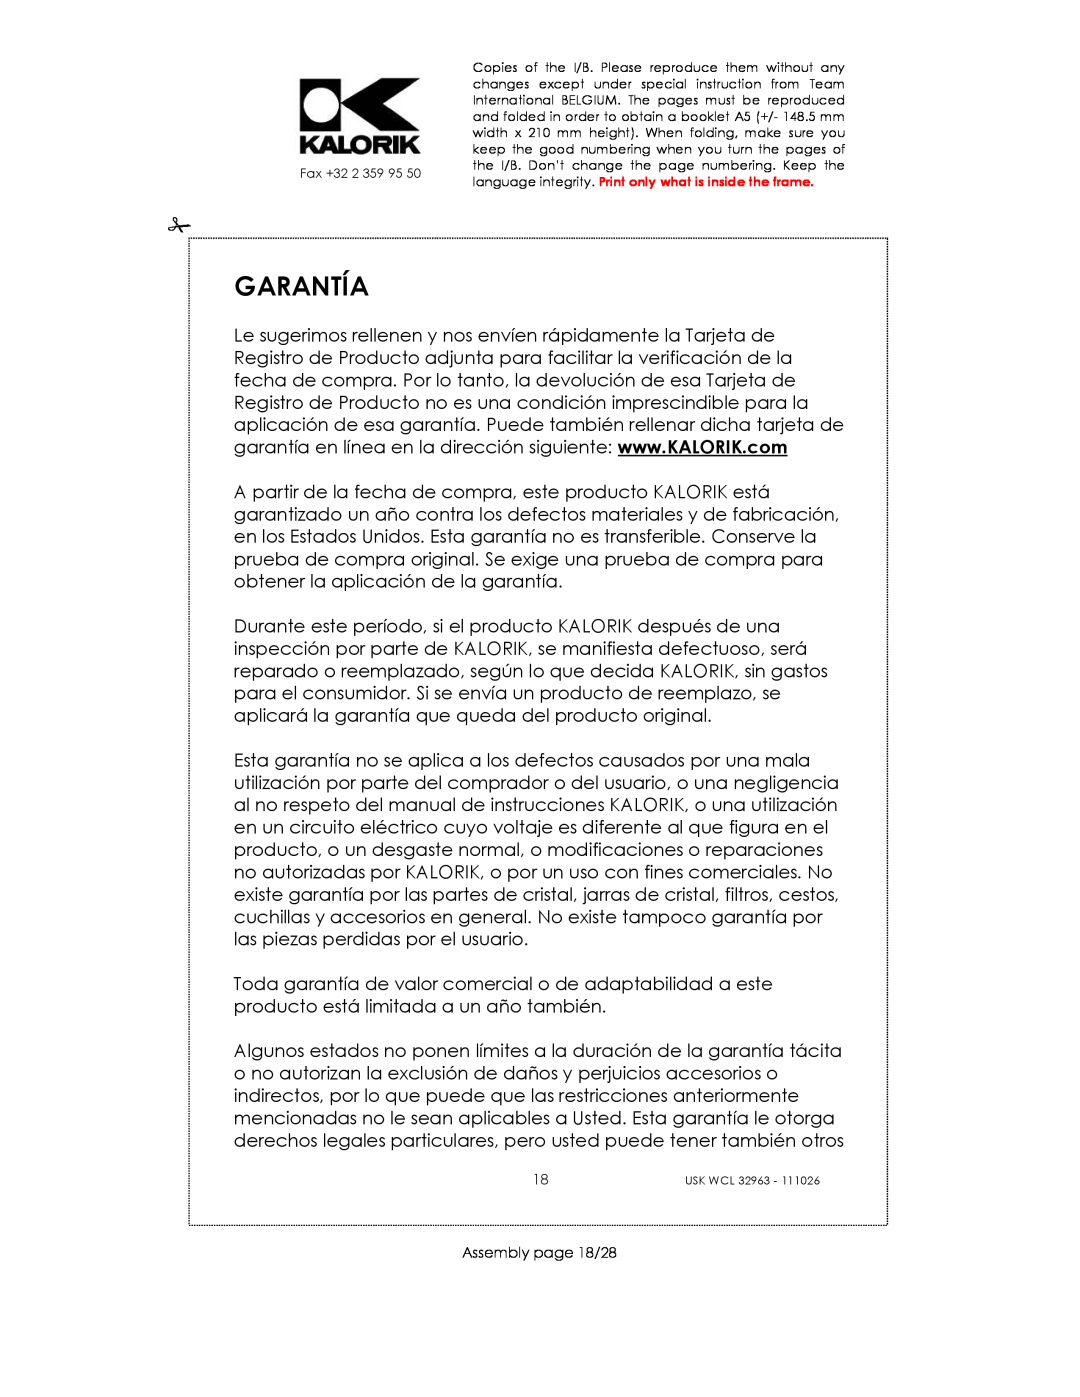 Kalorik USK WCL 32963 manual Garantía, Assembly page 18/28 